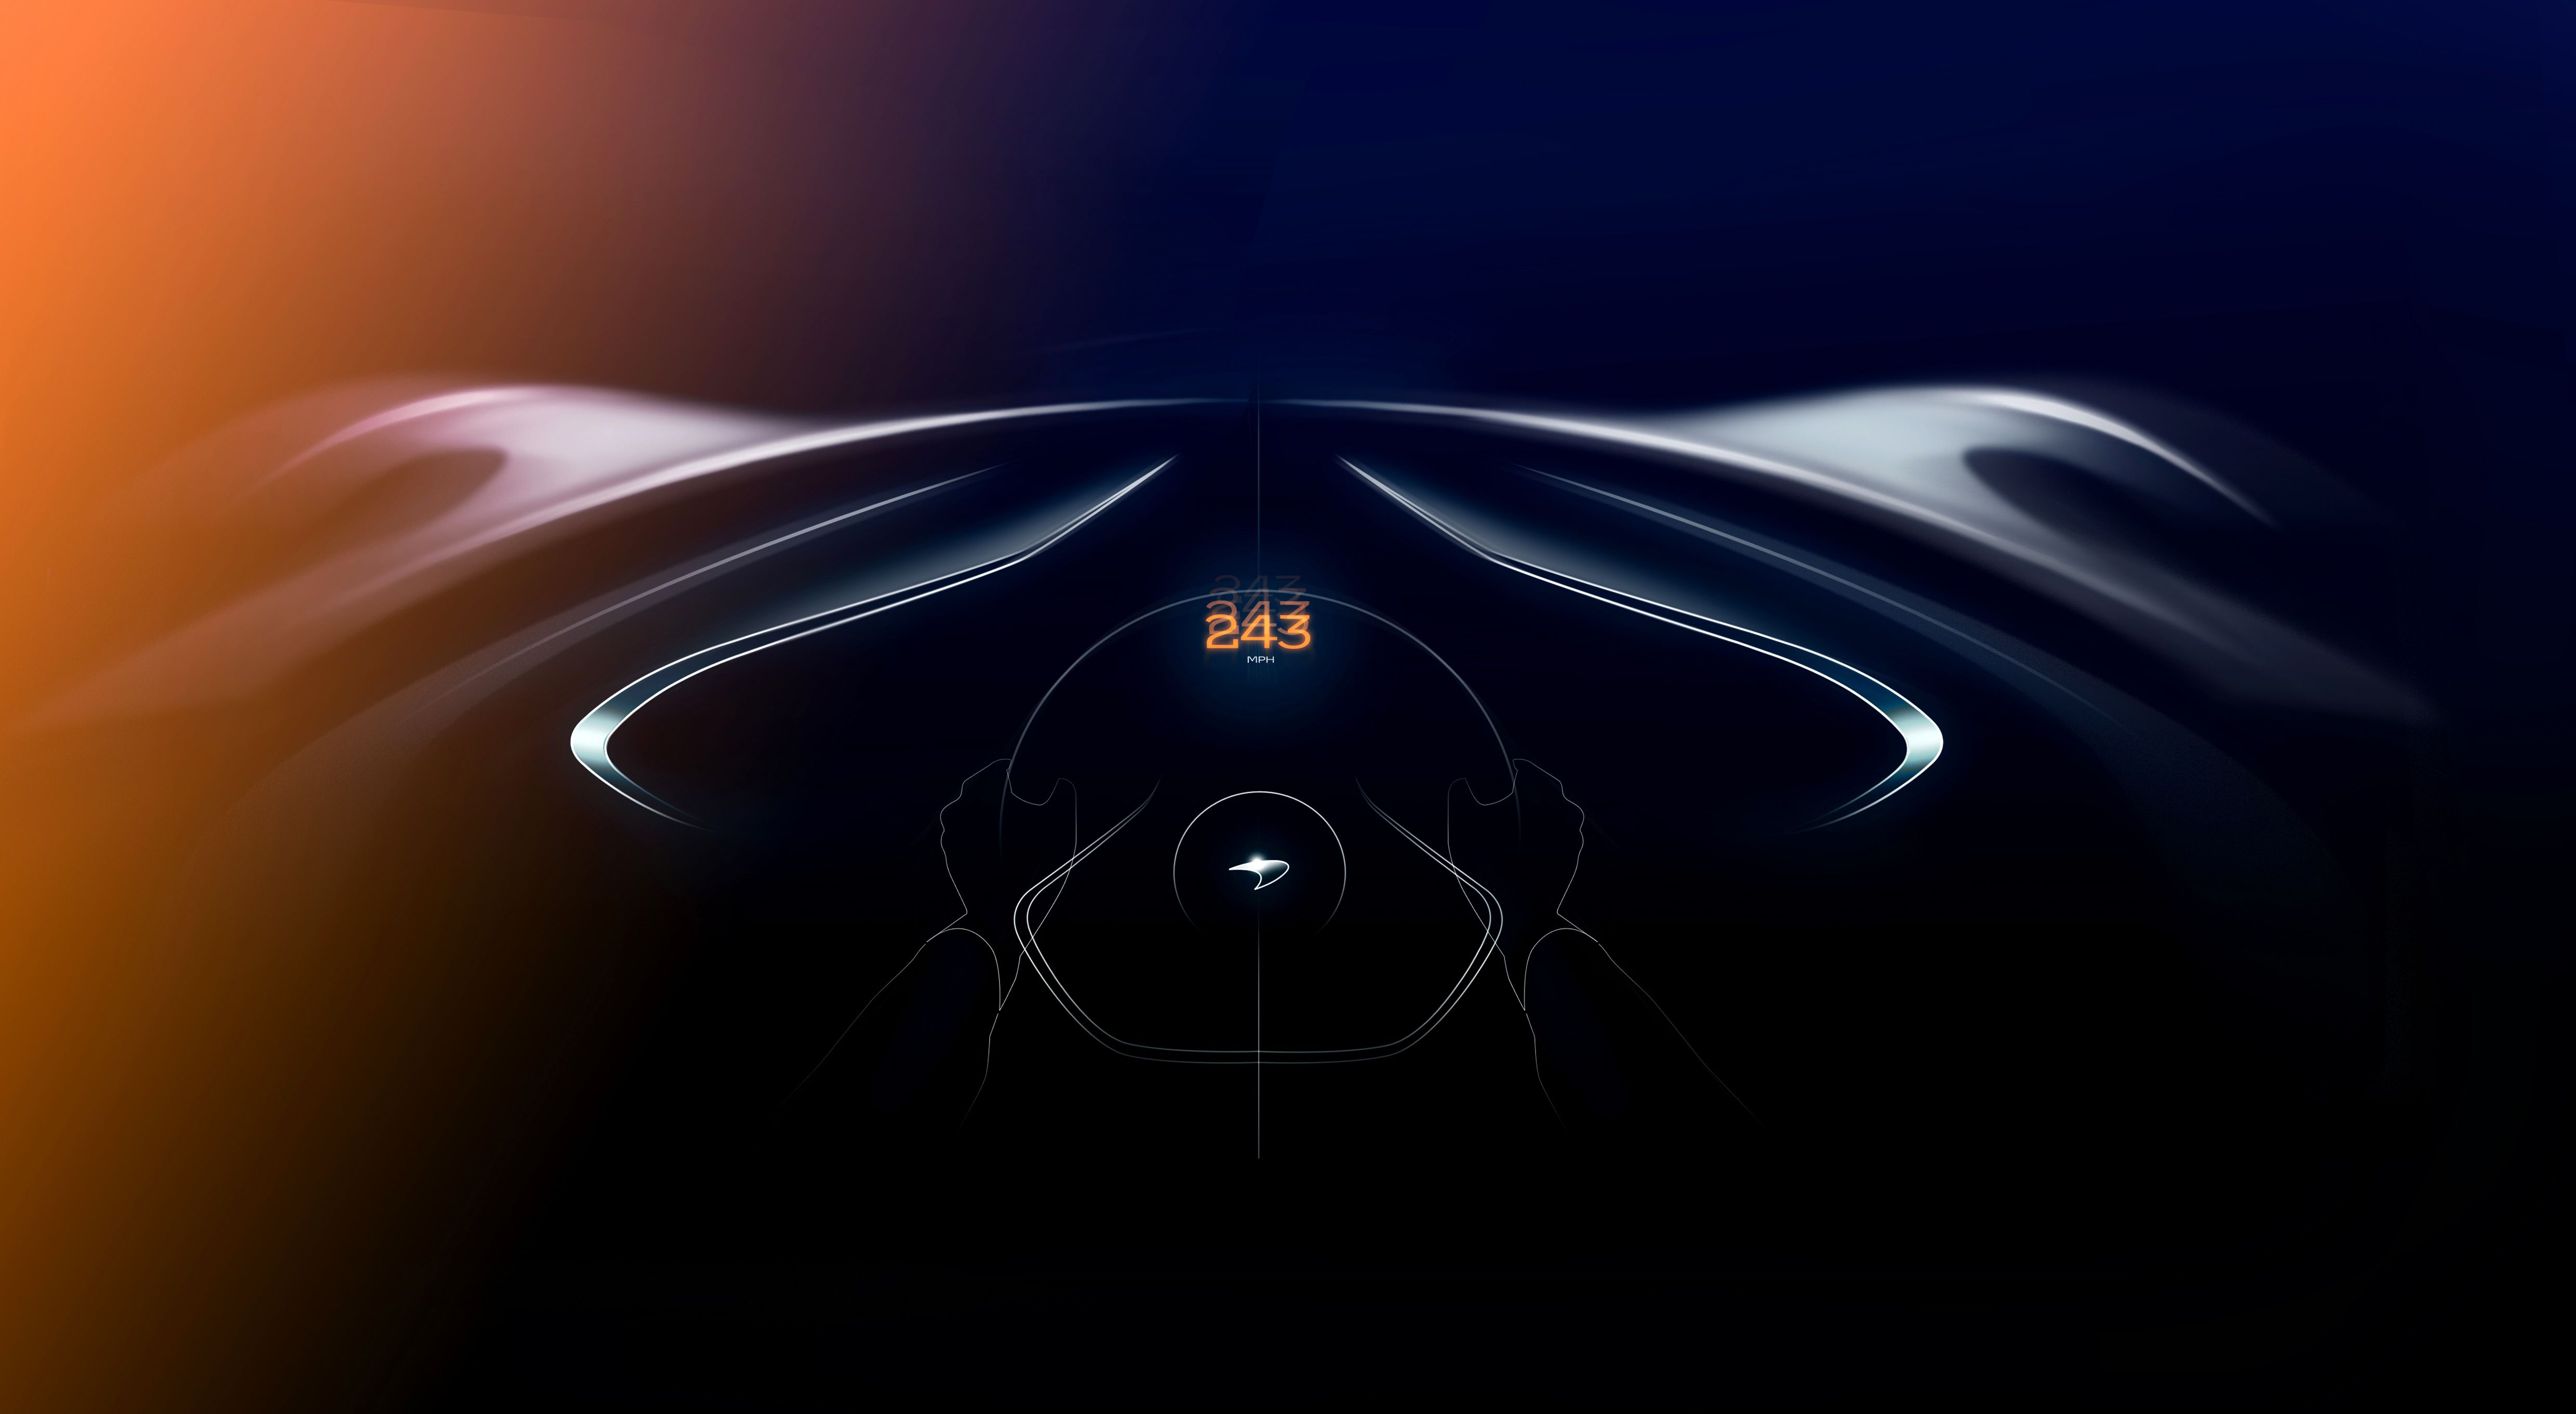 2019 McLaren Speedtail